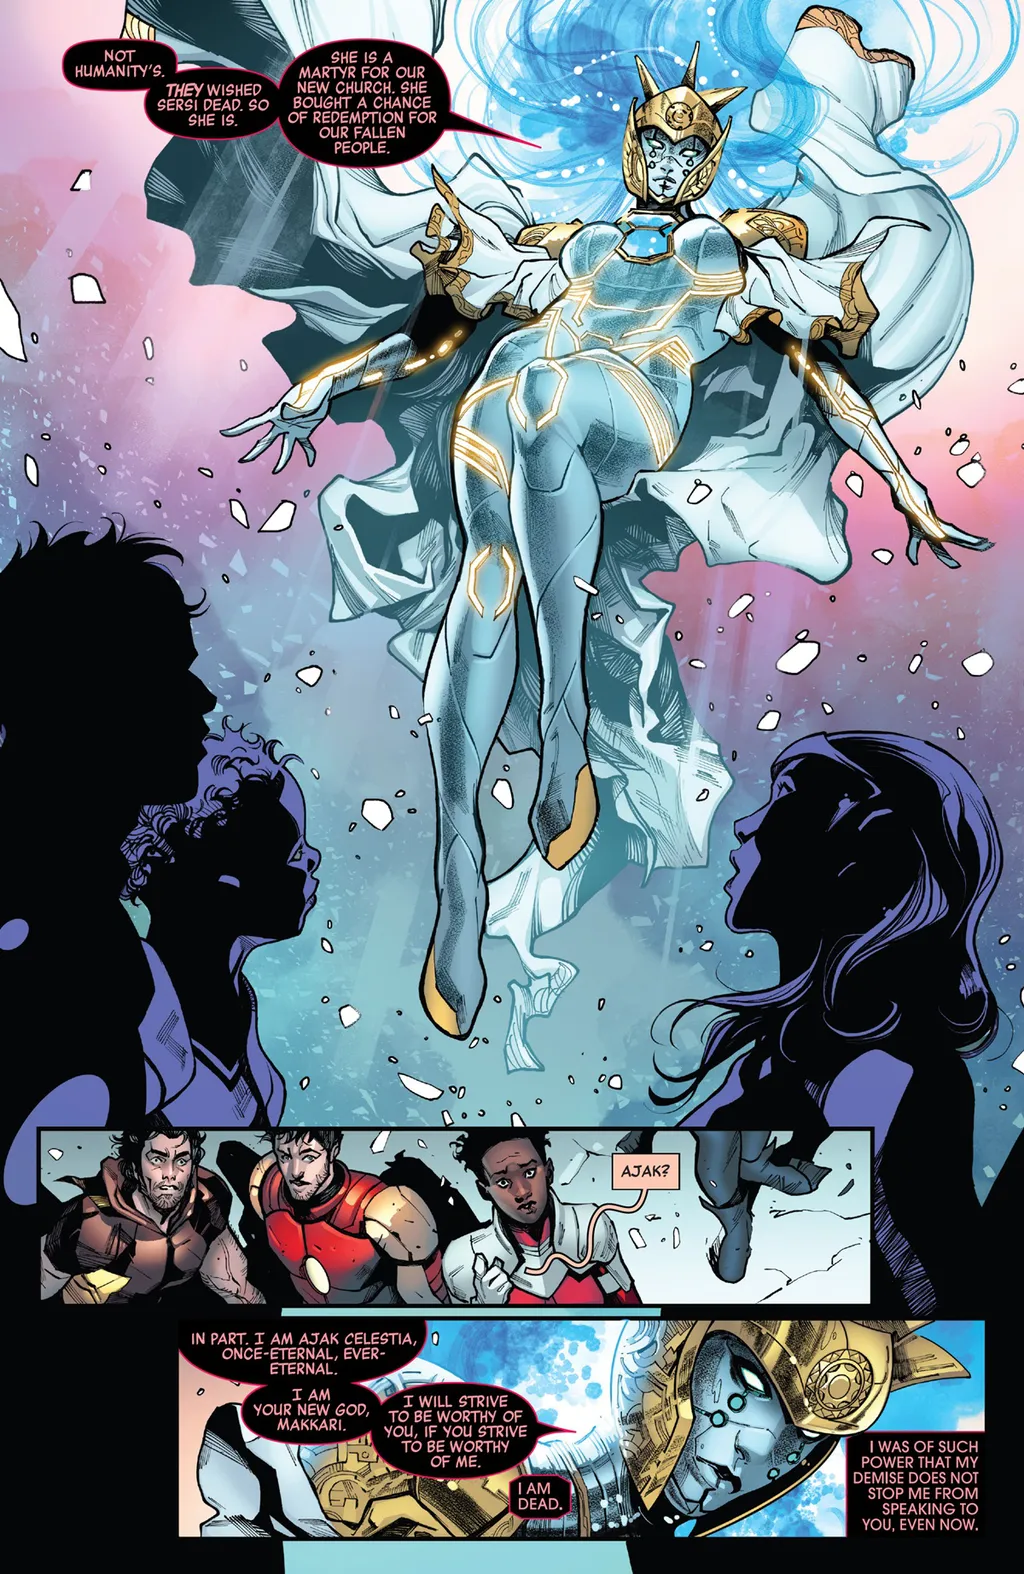 No final da treta entre Vingadores, X-Men e Eternos, Ajak se torna uma deusa que precisa julgar a humanidade diariamente (Imagem: Reprodução/Marvel Comics)